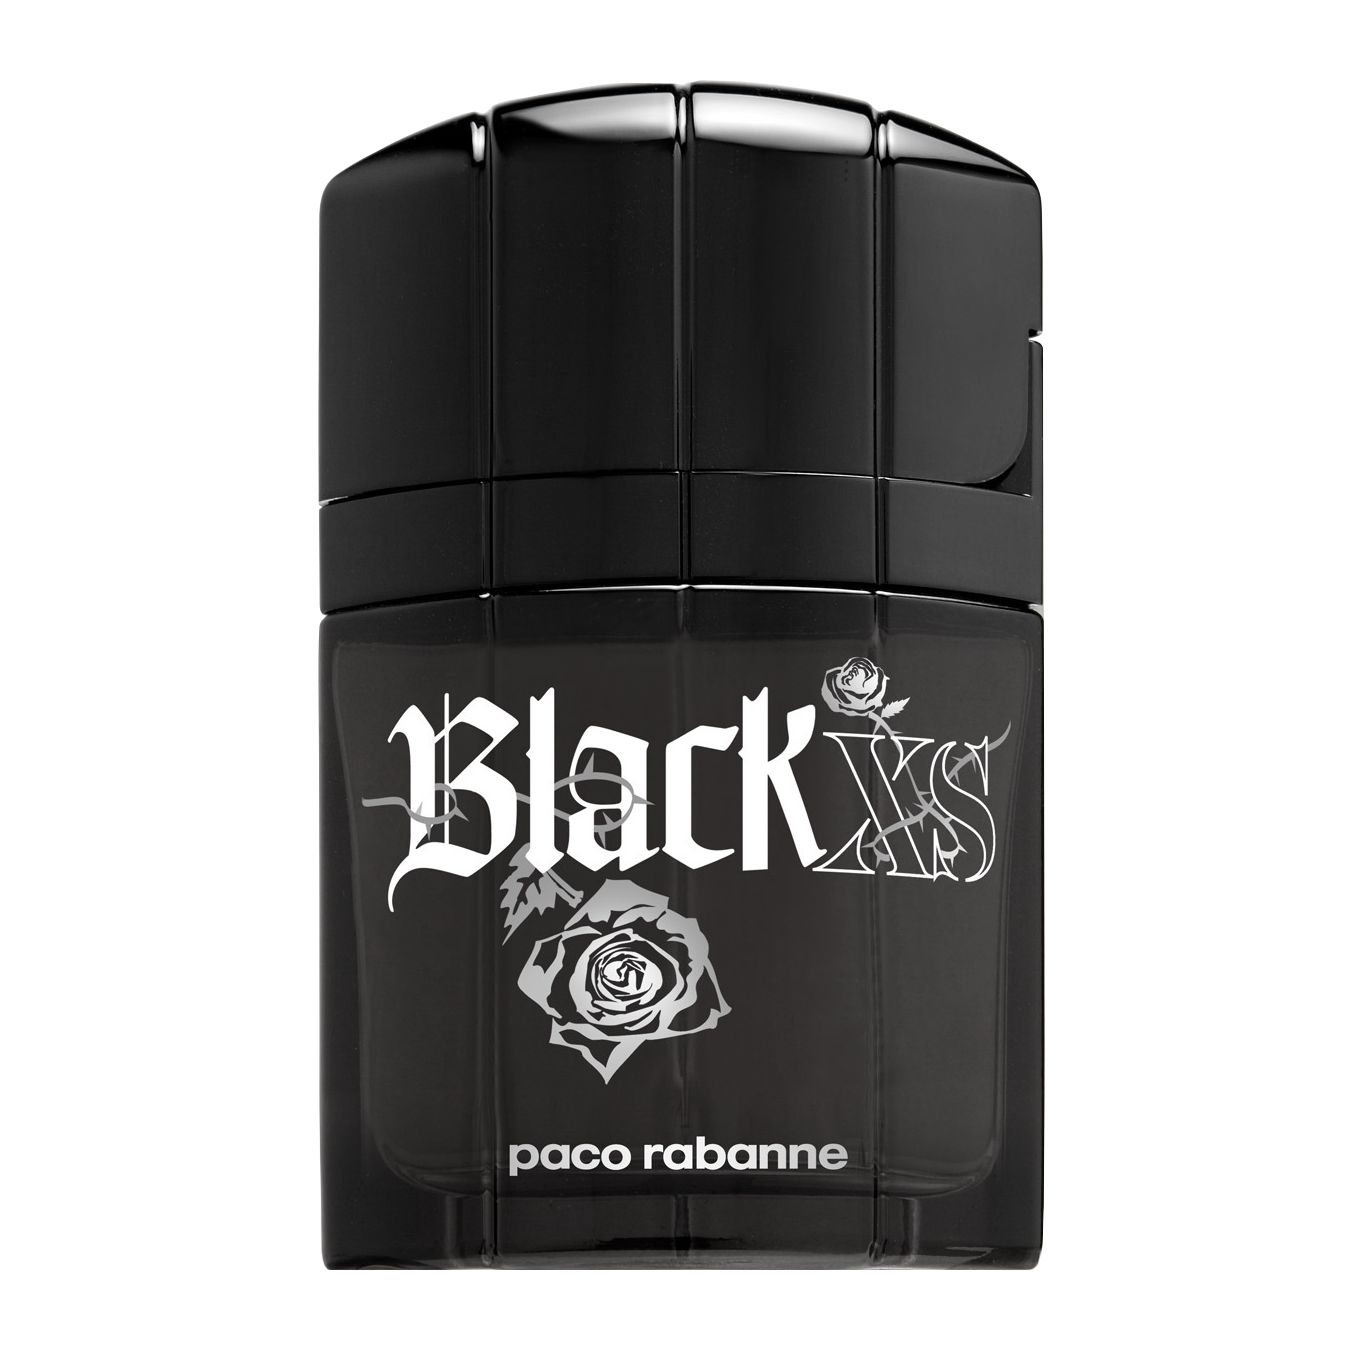 paco rabanne Black XS for Men Eau de Toilette, 50ml